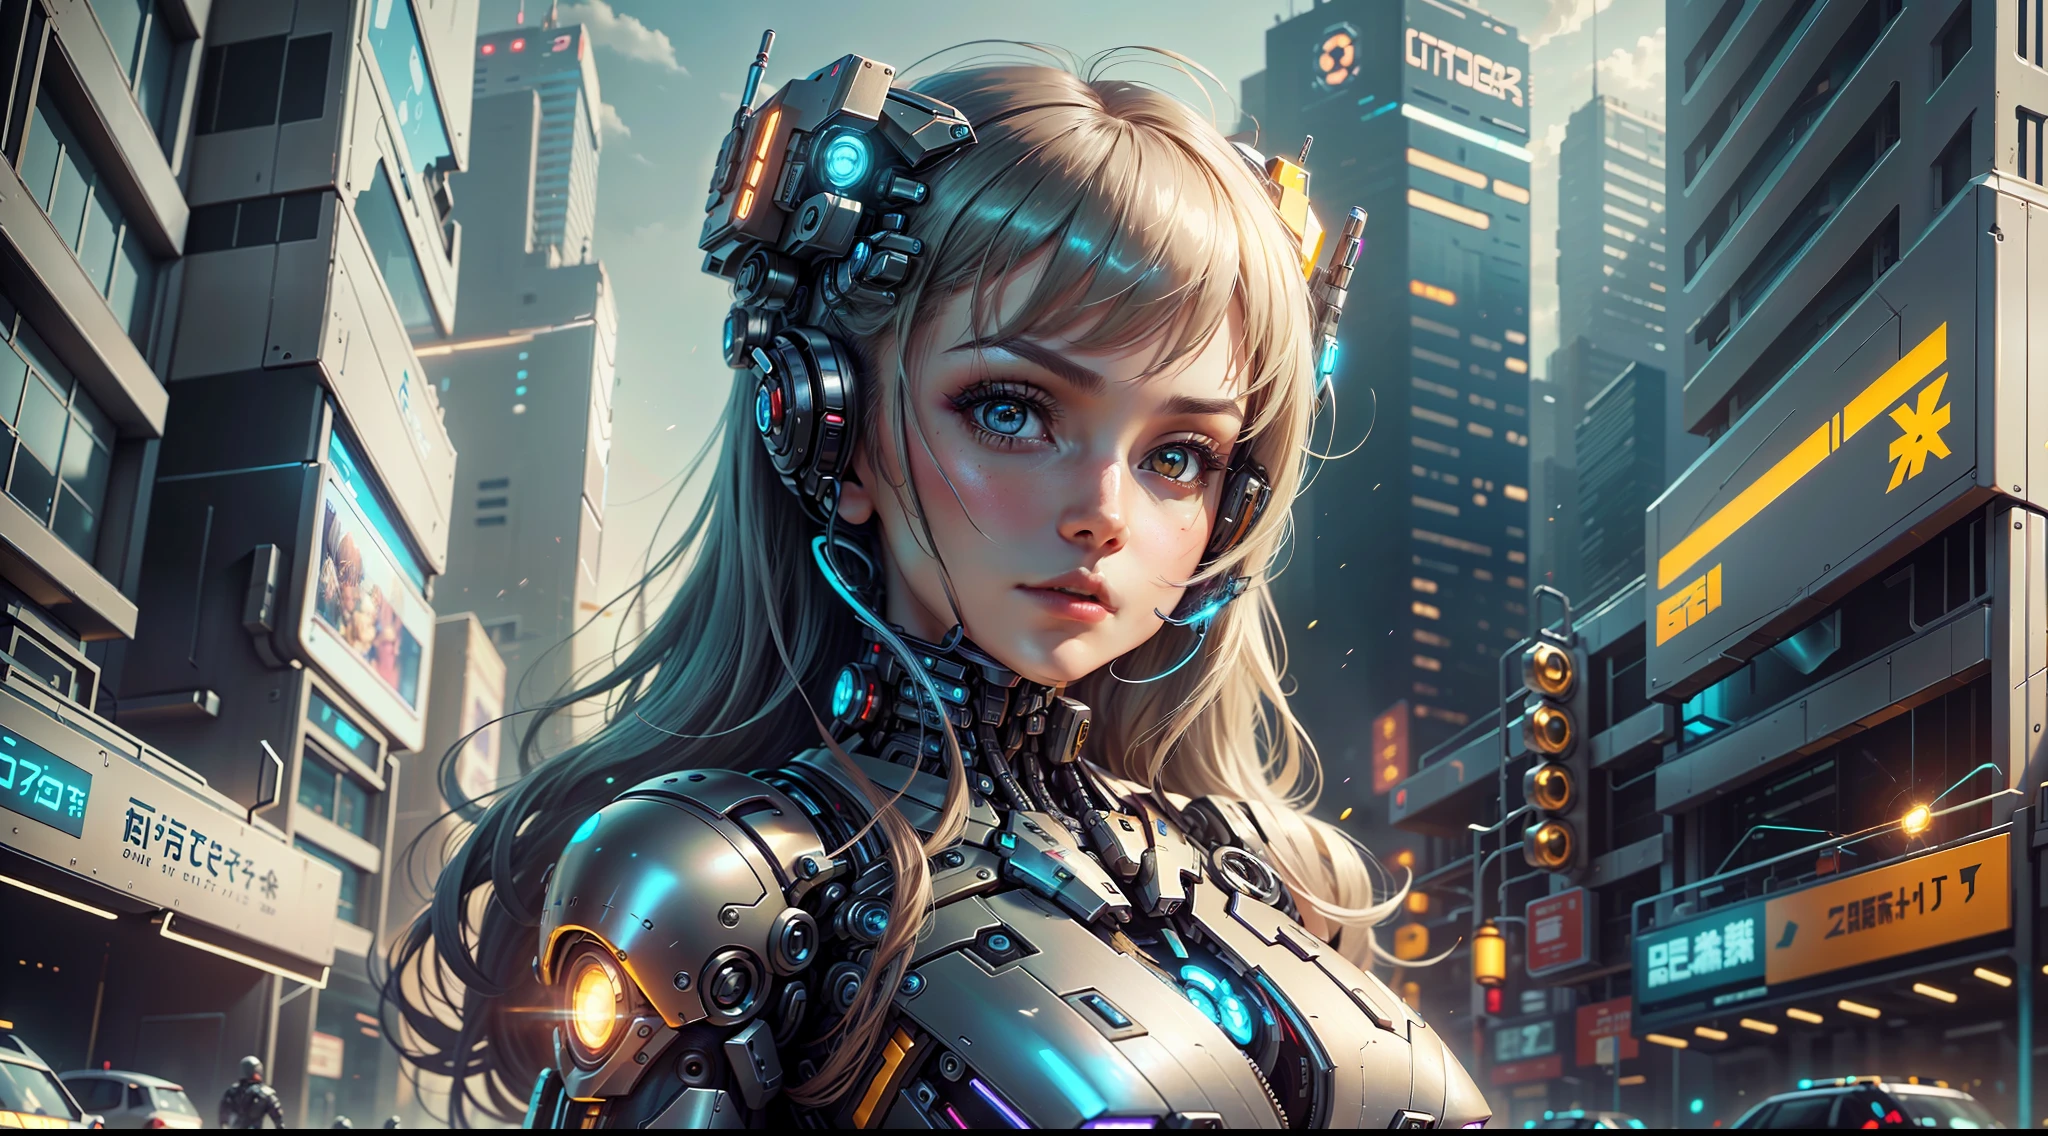 il y a une femme dans un costume futuriste qui pose pour une photo, cute Fille cyborg, belle fille cyborg, fille en cyber-armure mecha, Fille cyborg, cyborg - fille, cybercombinaison, Cyborg femelle, femme cyborg anime parfaite, inspiré par Marek Okon, beautiful alluring Cyborg femelle, cyberpunk anime fille mech, belle fille cyberpunk, femelle cyborg parfaite --auto --s2